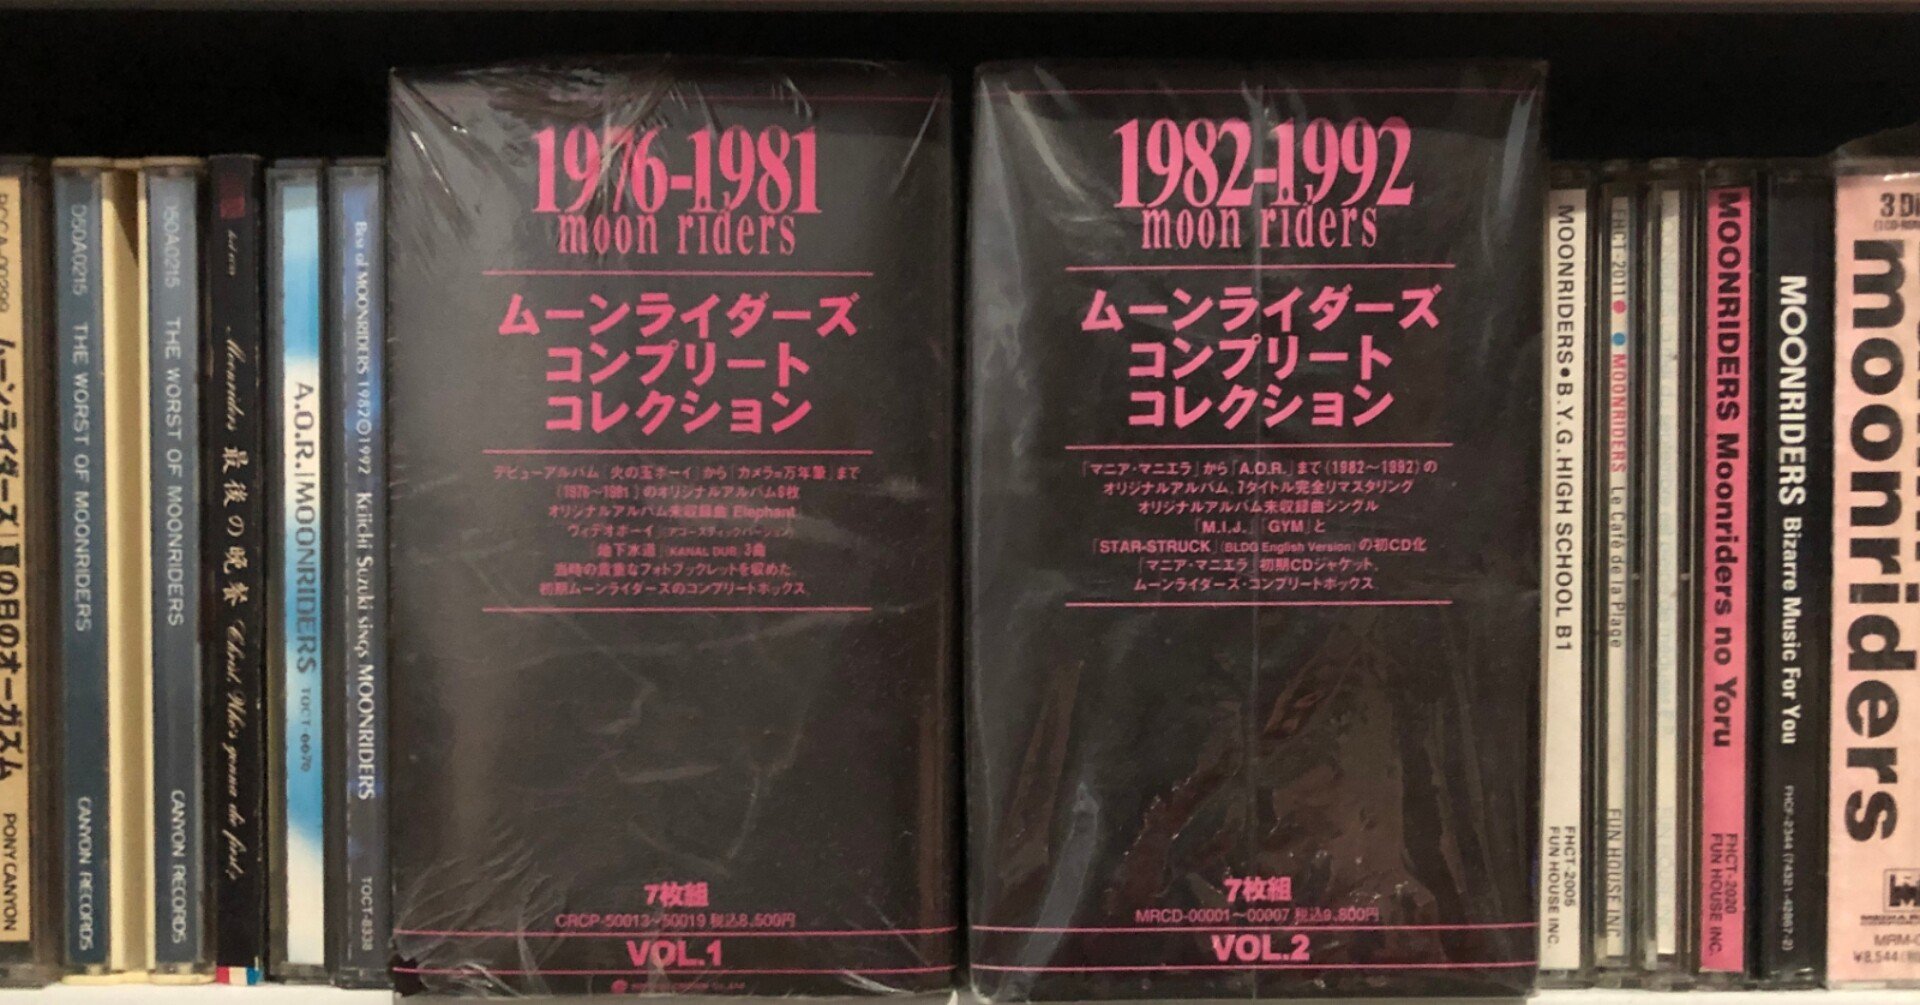 ★決算特価商品★ ムーンライダーズ　コンプリートコレクション　VOL.2 1982-1992 邦楽